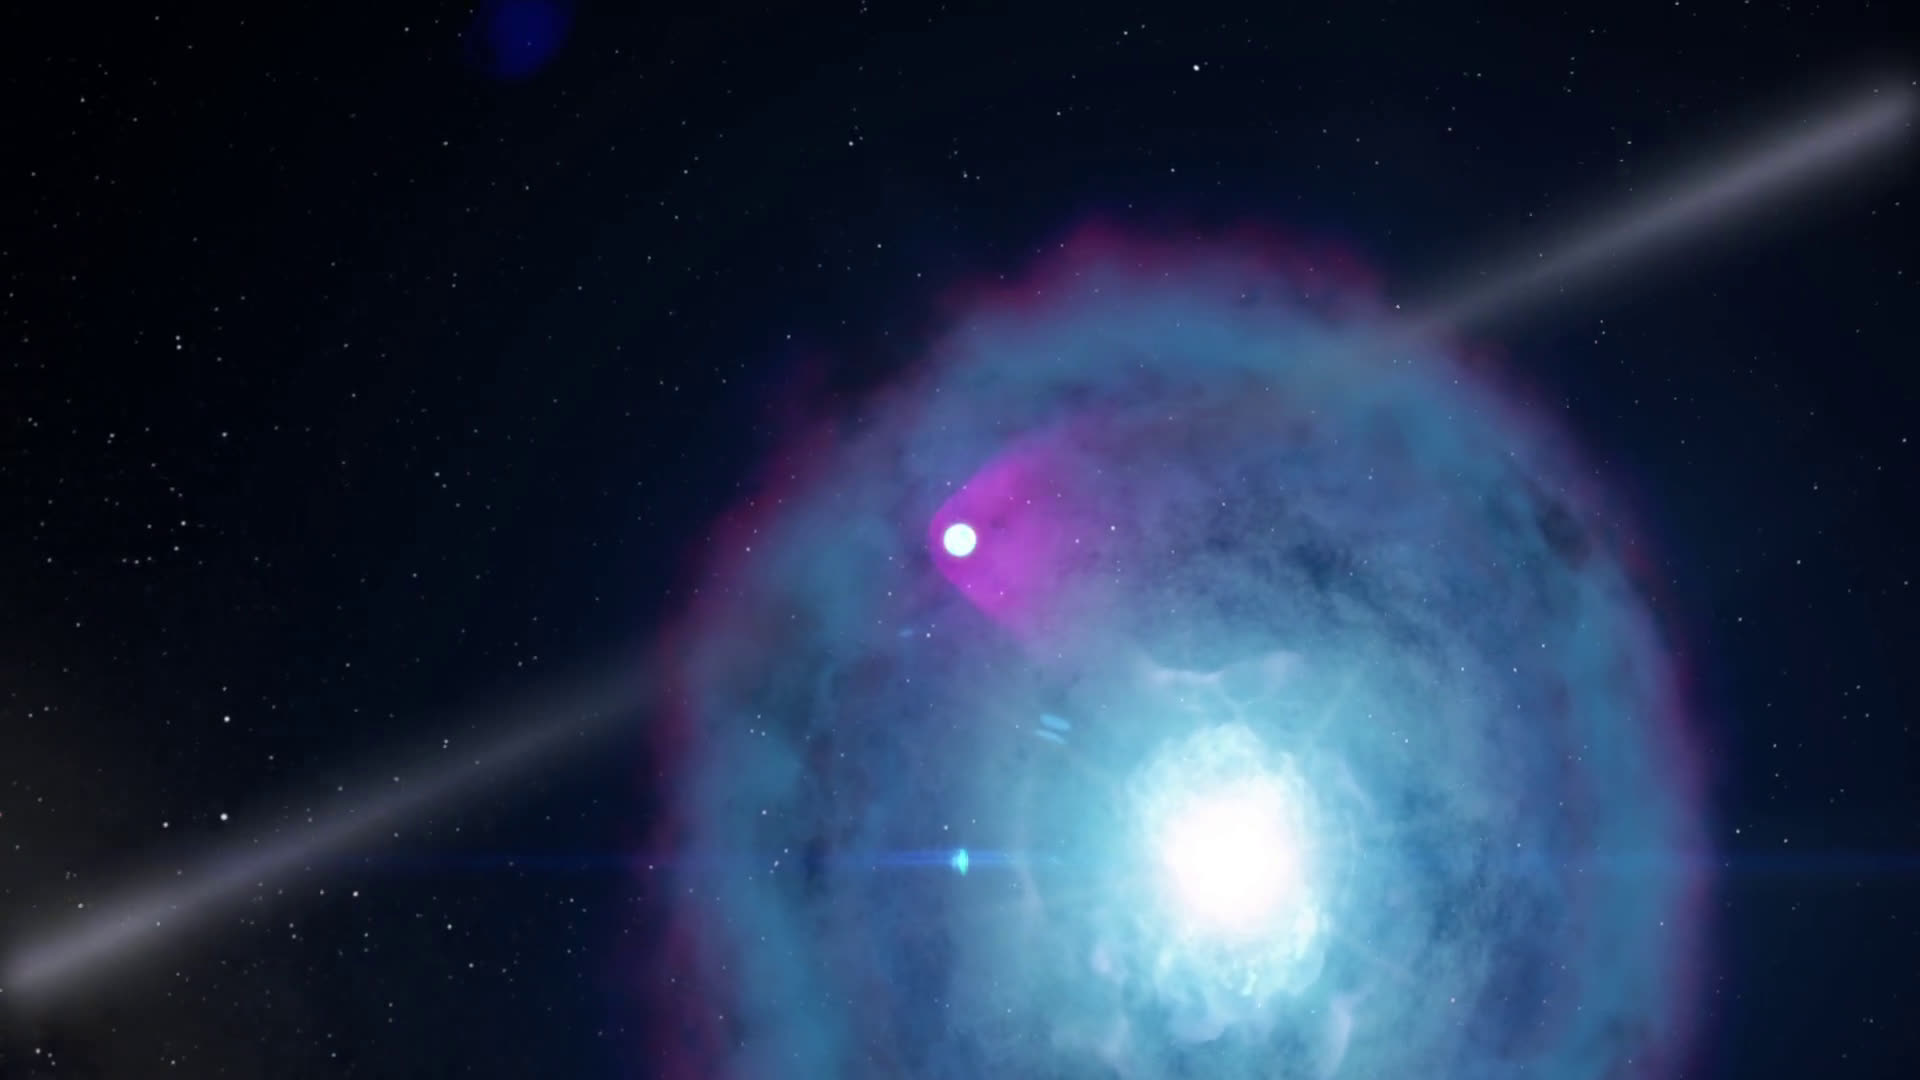 Звезды холодные небесные тела. Аккретор рентгеновский Пульсар. Нейтронная звезда Аккретор. Миллисекундный Пульсар. Пульсар PSR b0531+21.